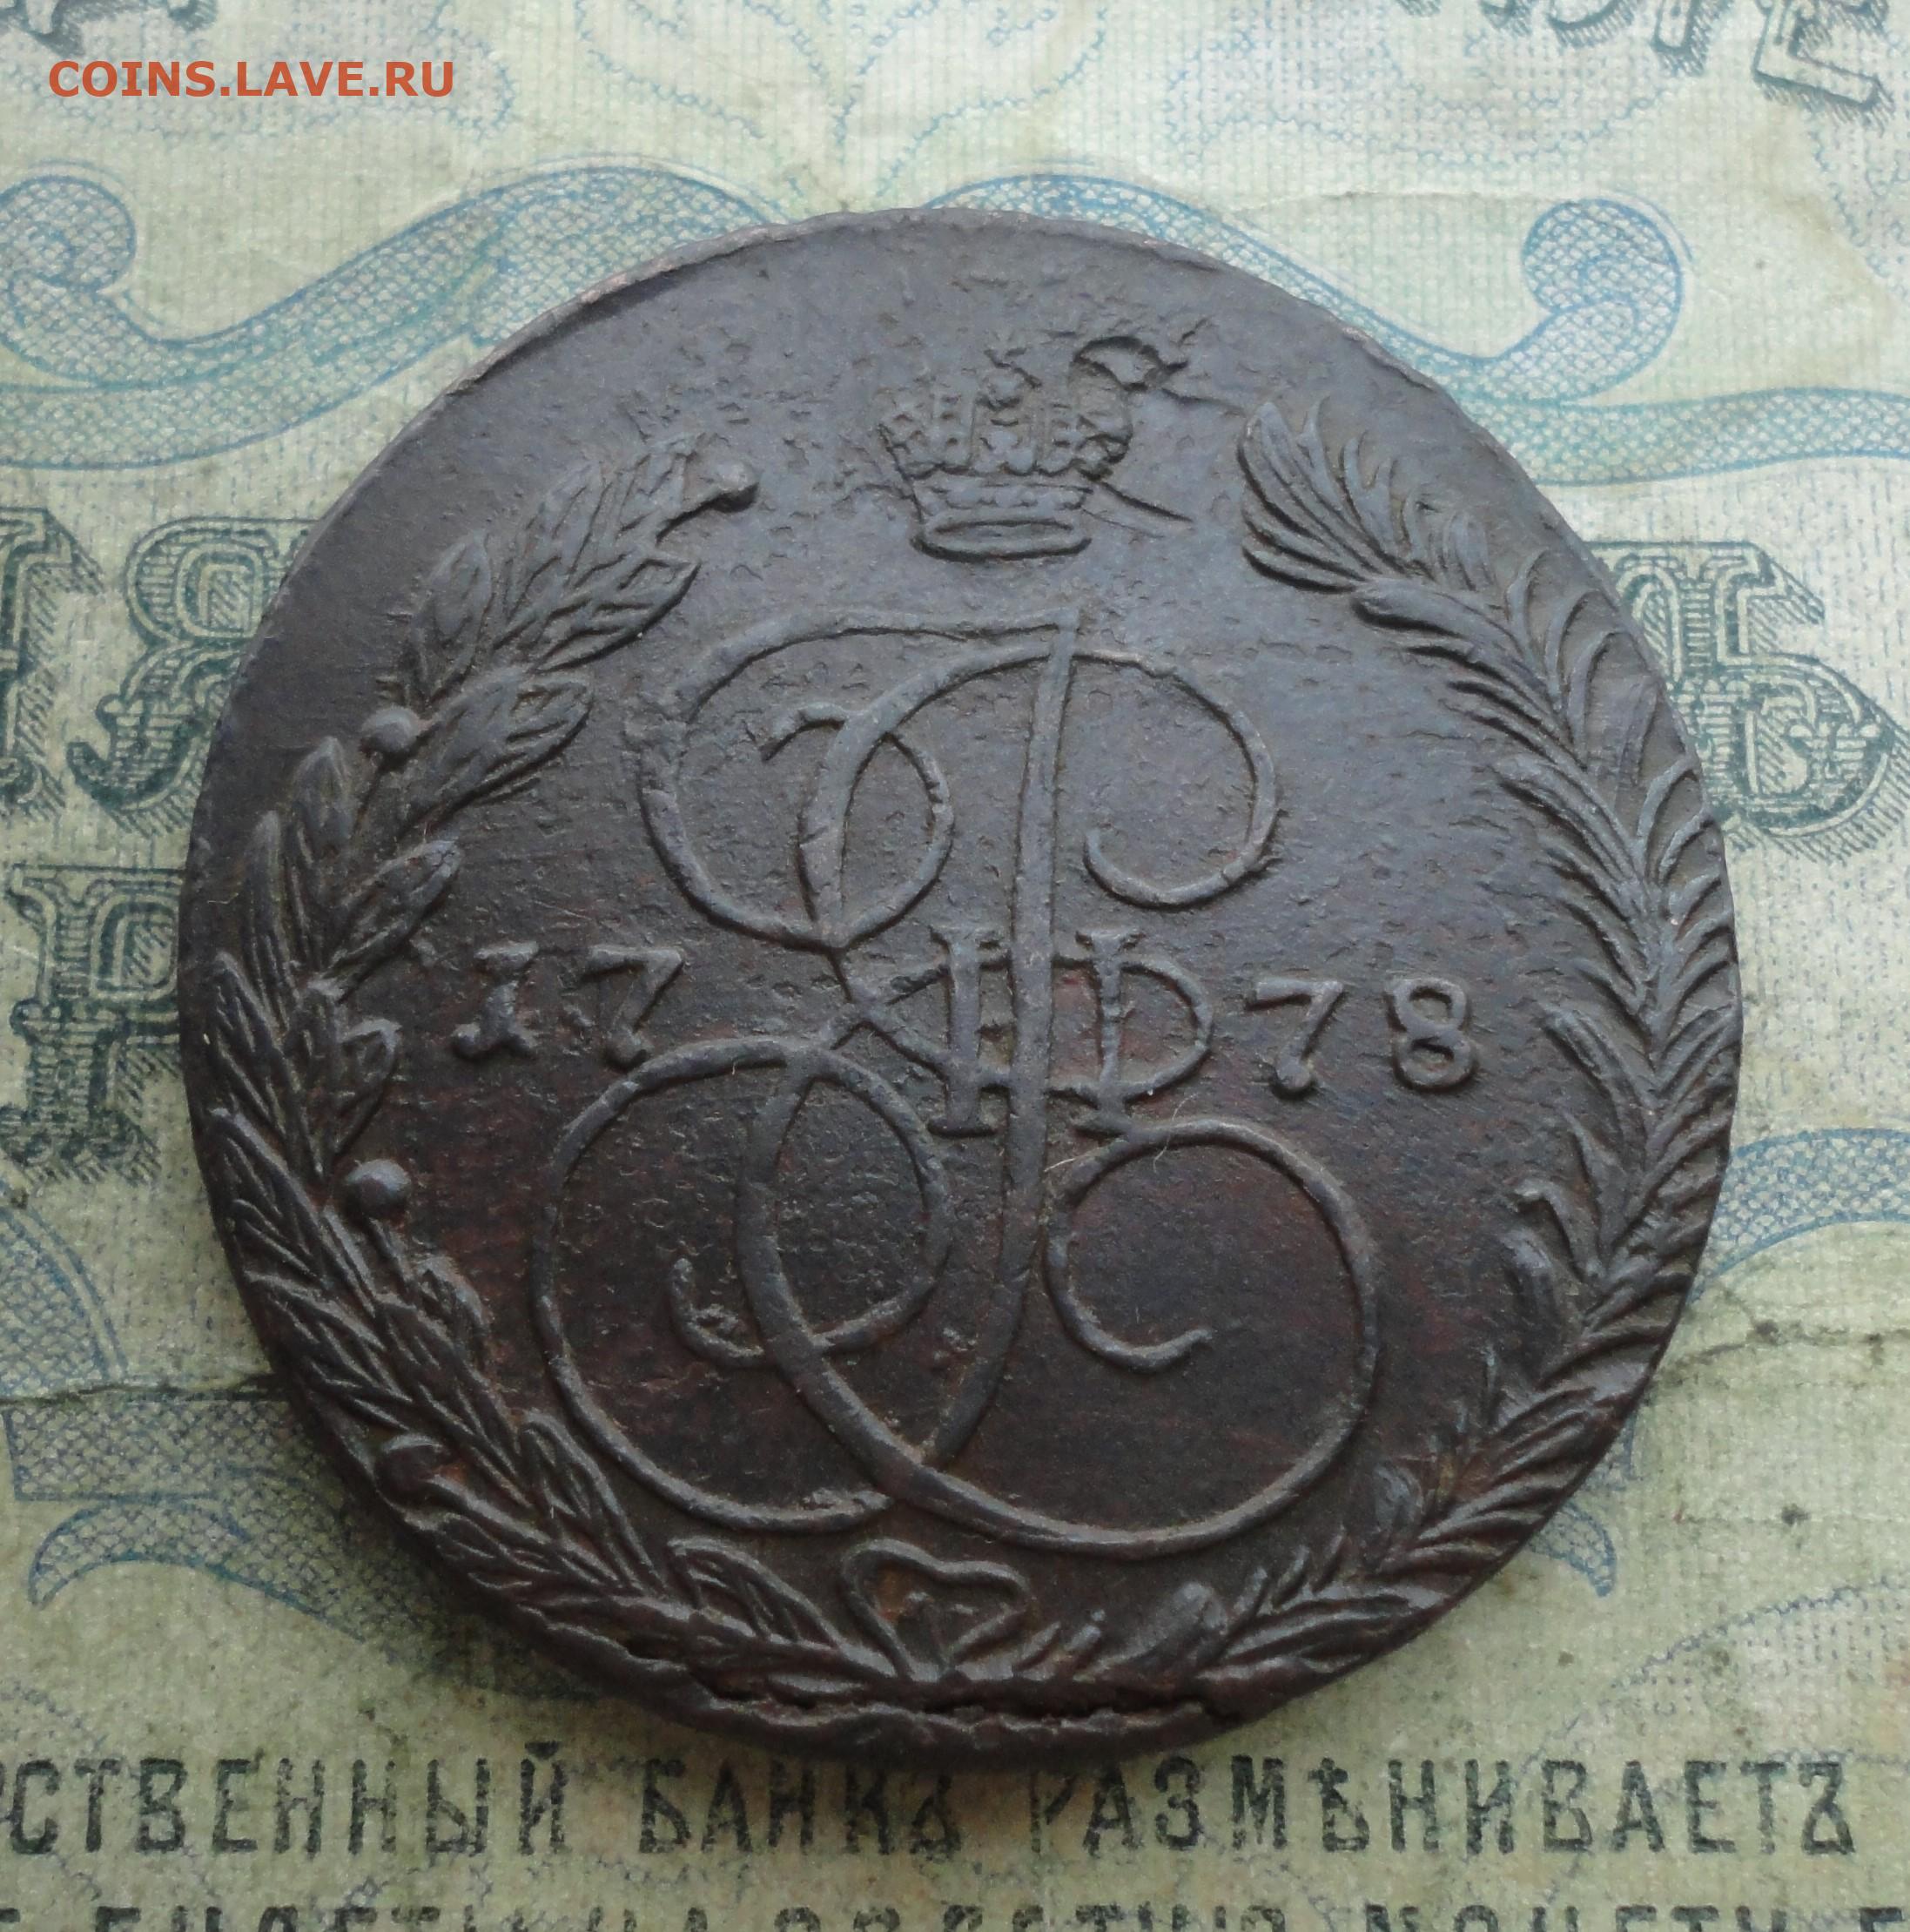 5 копеек 20. 10000 Для 1781 года в России. Фото 1781 года в СССР.